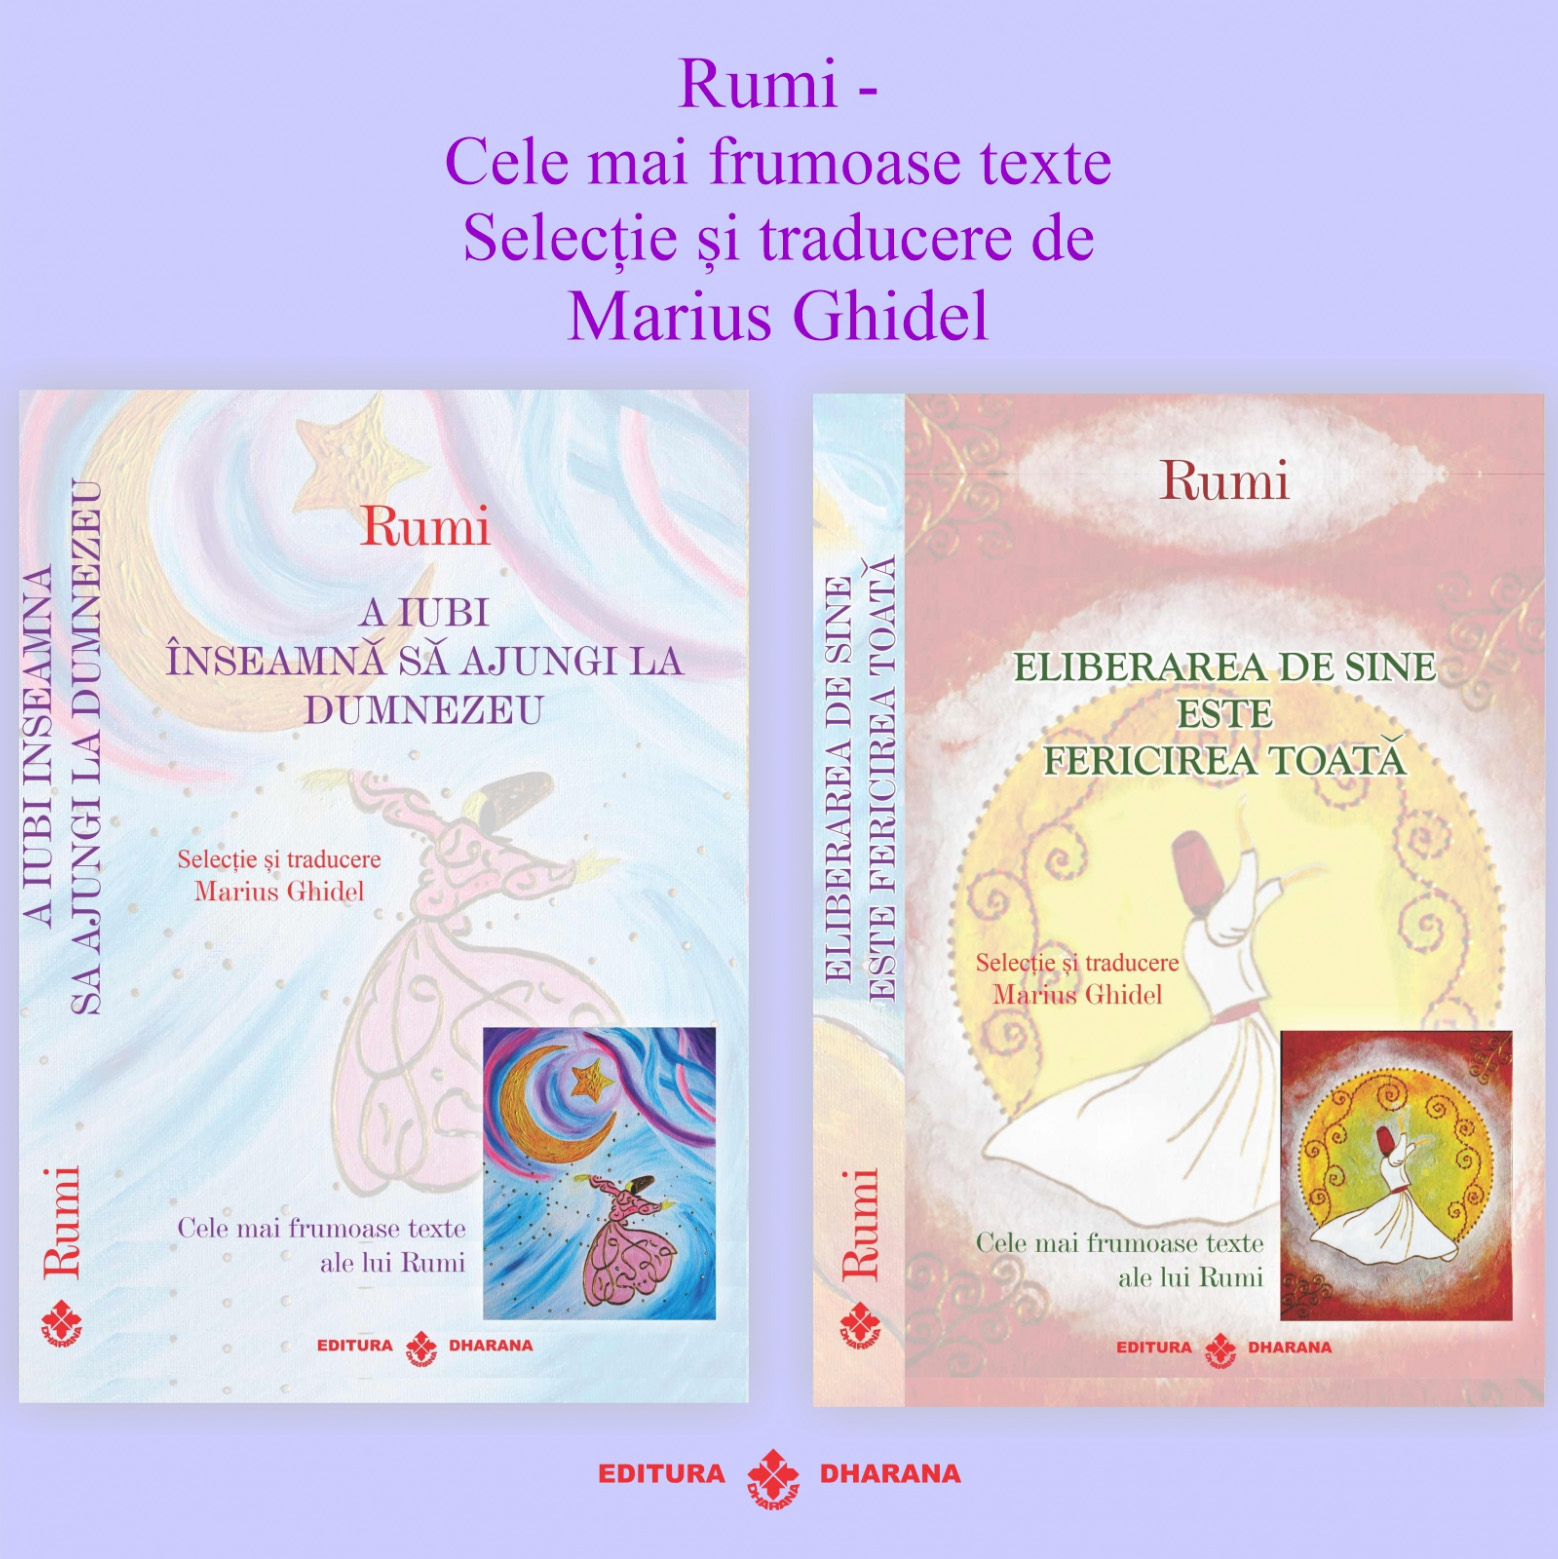 Set carti Rumi – Cele mai frumoase texte: A iubi inseamna sa ajungi la Dumnezeu / Eliberarea de sine este fericirea toata | Rumi carturesti.ro imagine 2022 cartile.ro